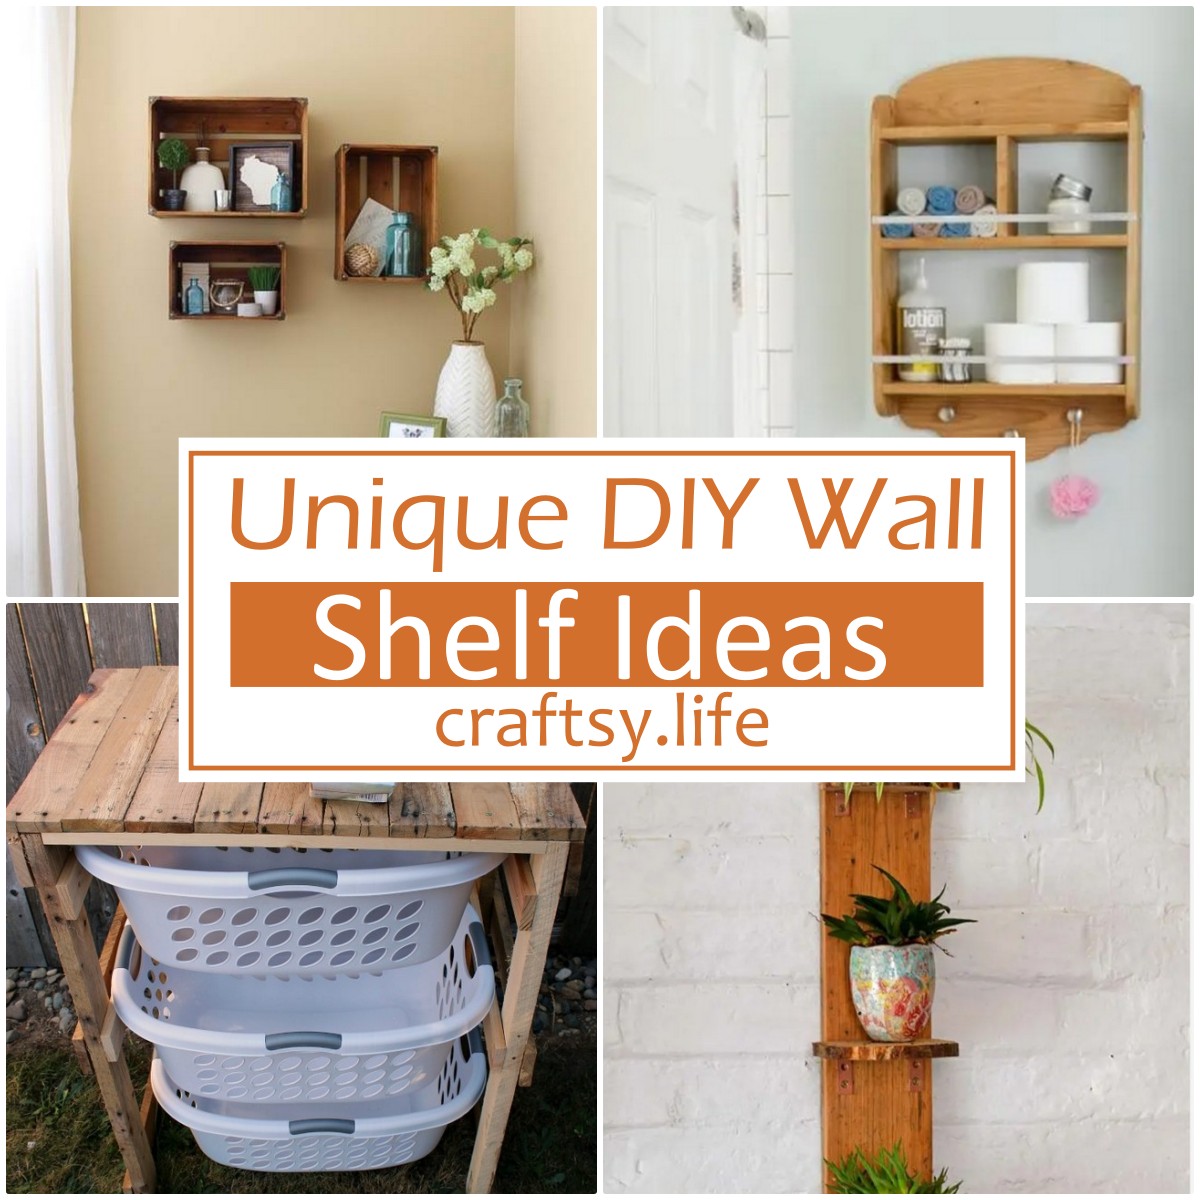 DIY Wall Shelf Ideas